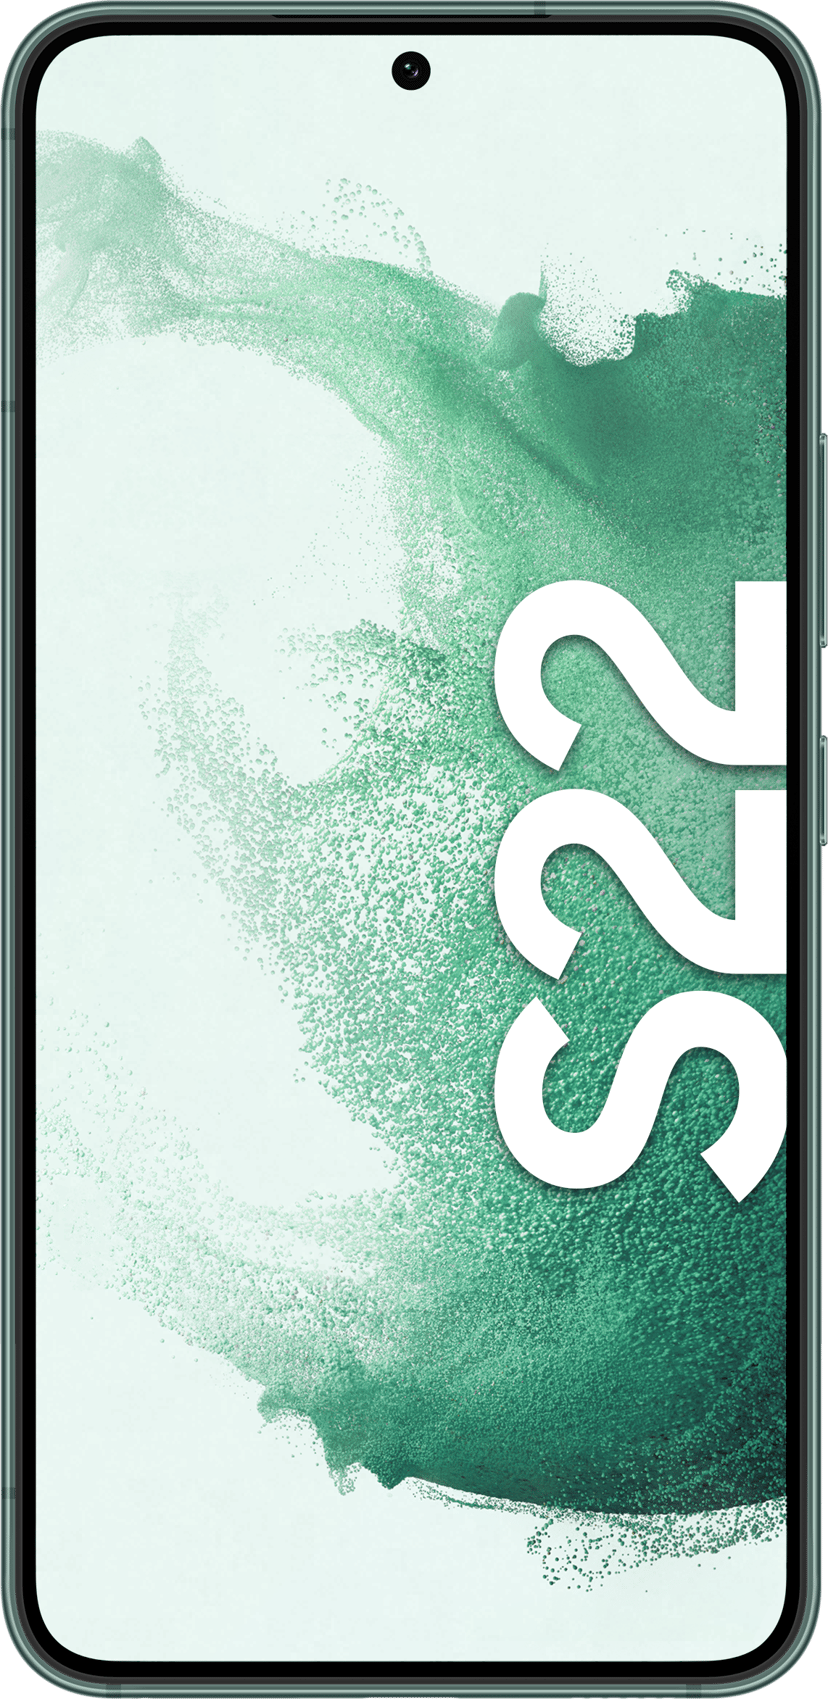 Samsung Galaxy S22 128GB Dual-SIM Grön